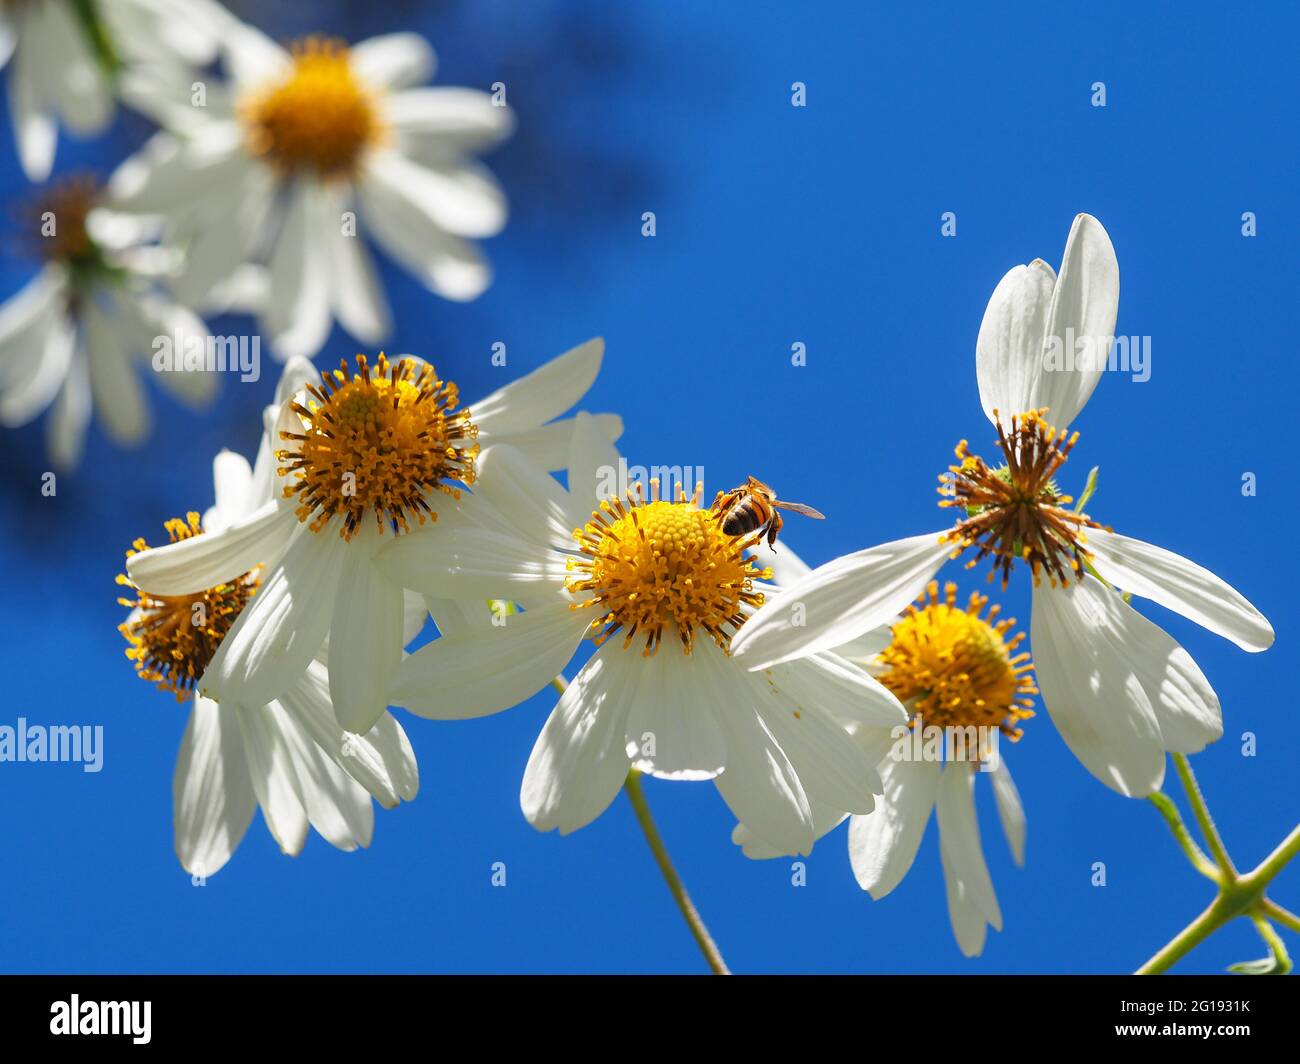 Flores blancas con centros amarillos del árbol Daisy, Montanoa bipinnatifida, y una abeja recolectando polen, que se alza contra un cielo azul brillante Foto de stock